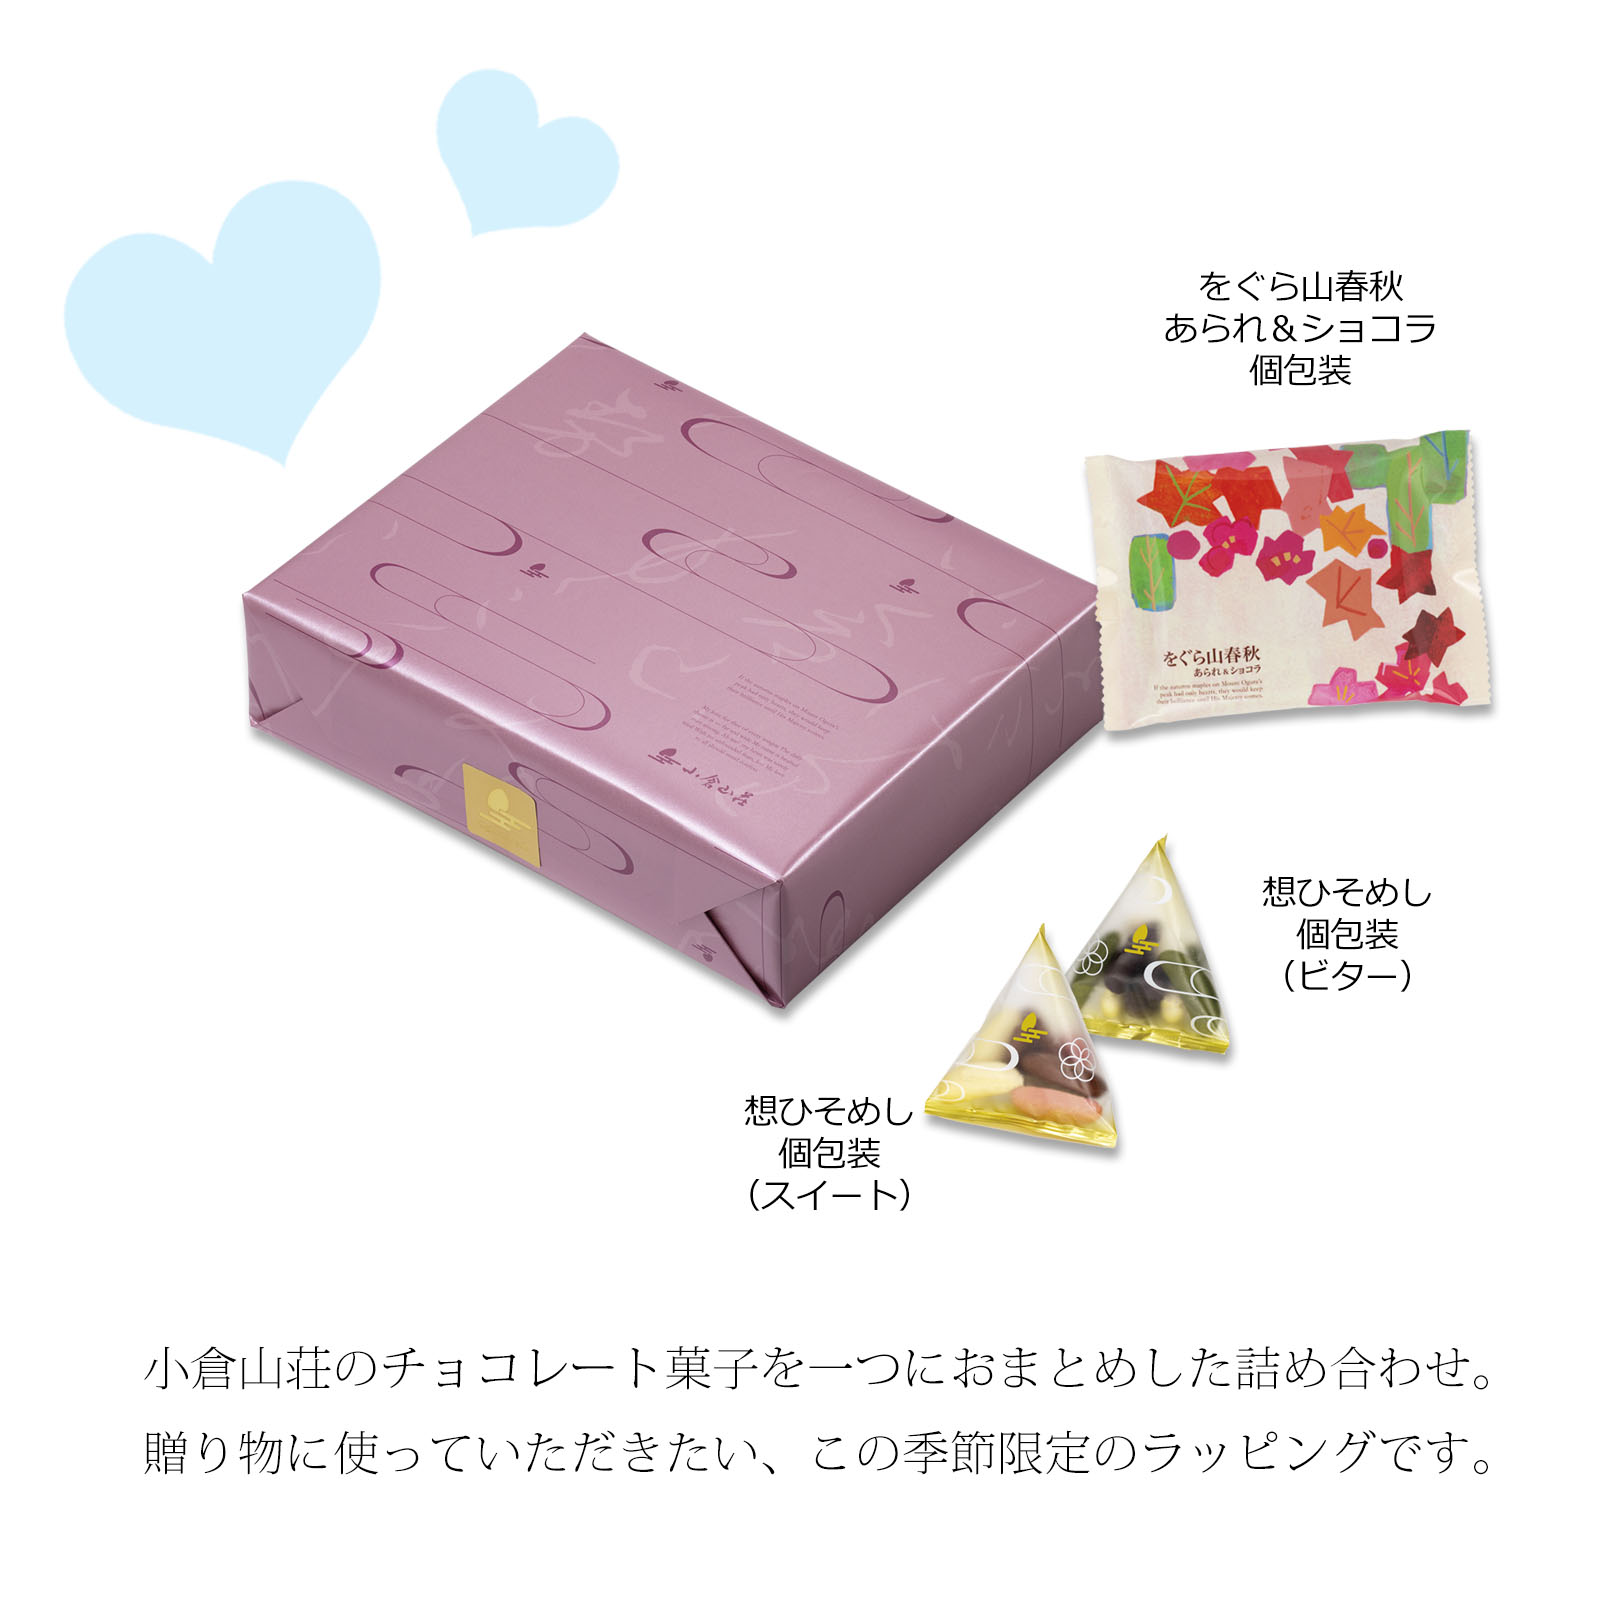 【ホワイトデー限定】小倉山荘ショコラアソート 小箱